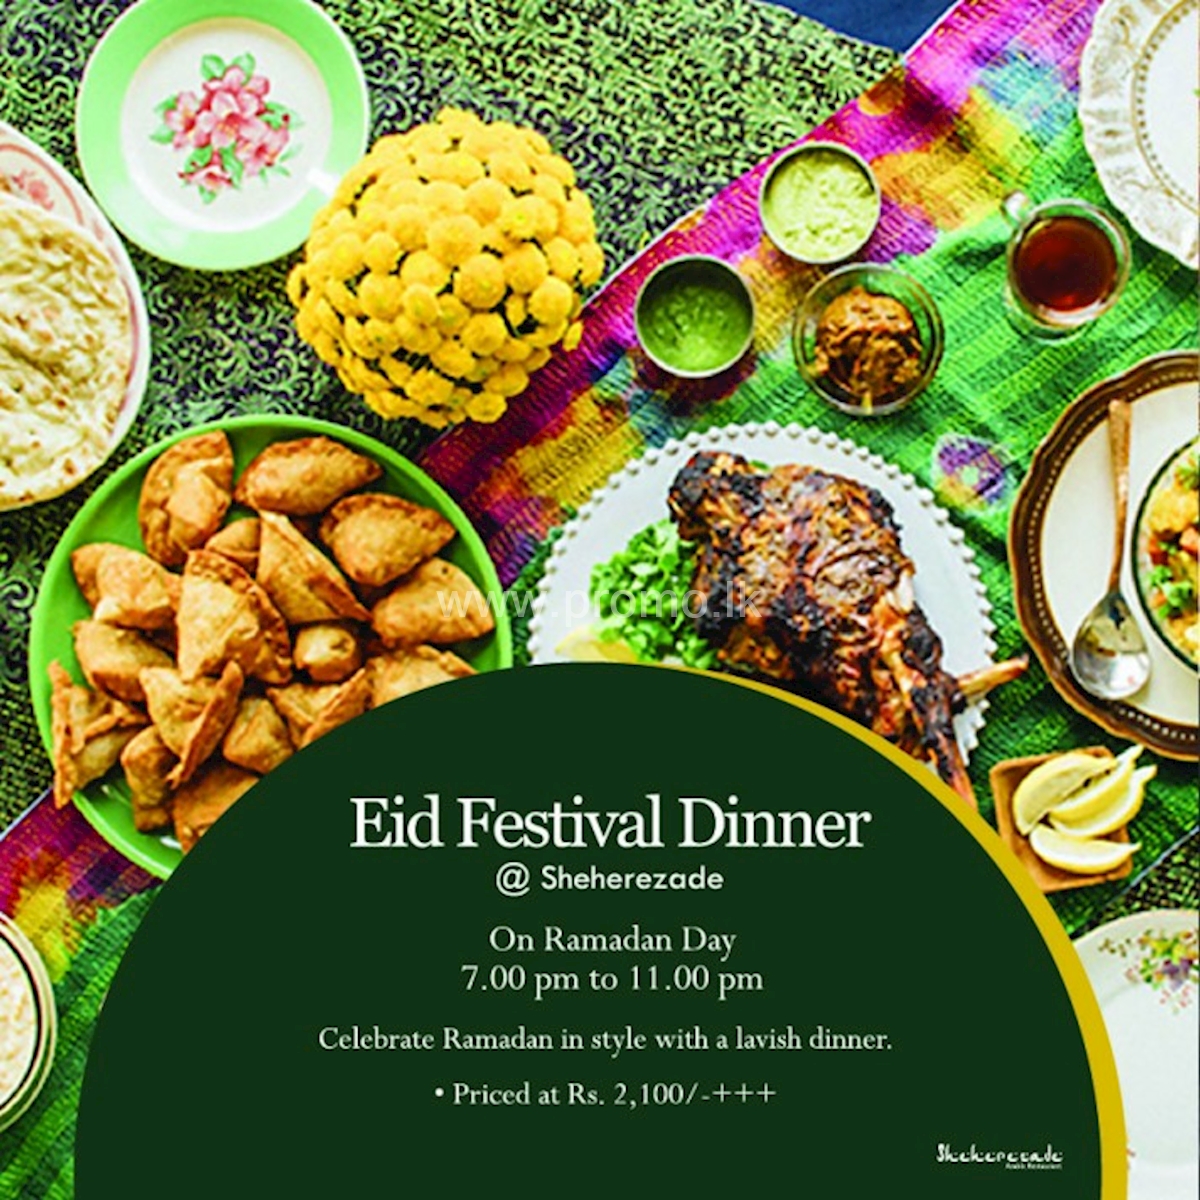 Eid Festival Dinner at Sheherezade